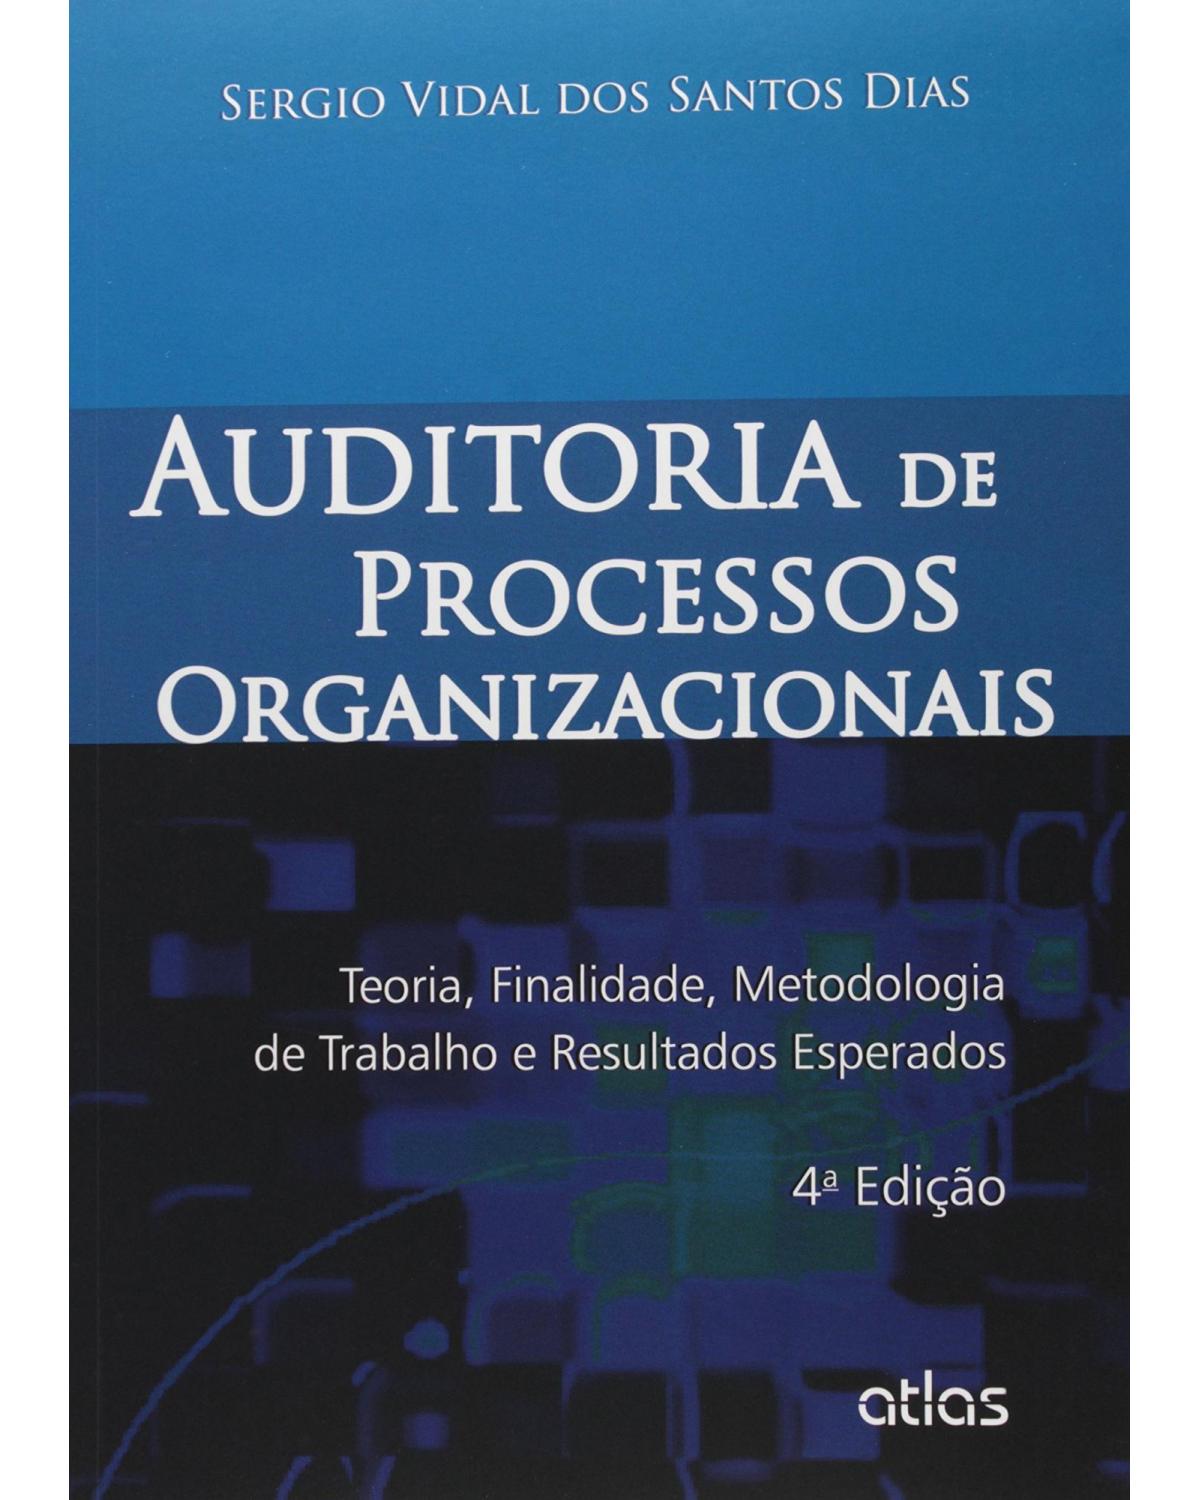 Auditoria de processos organizacionais - Teoria, finalidade, metodologia de trabalho e resultados esperados - 4ª Edição | 2015